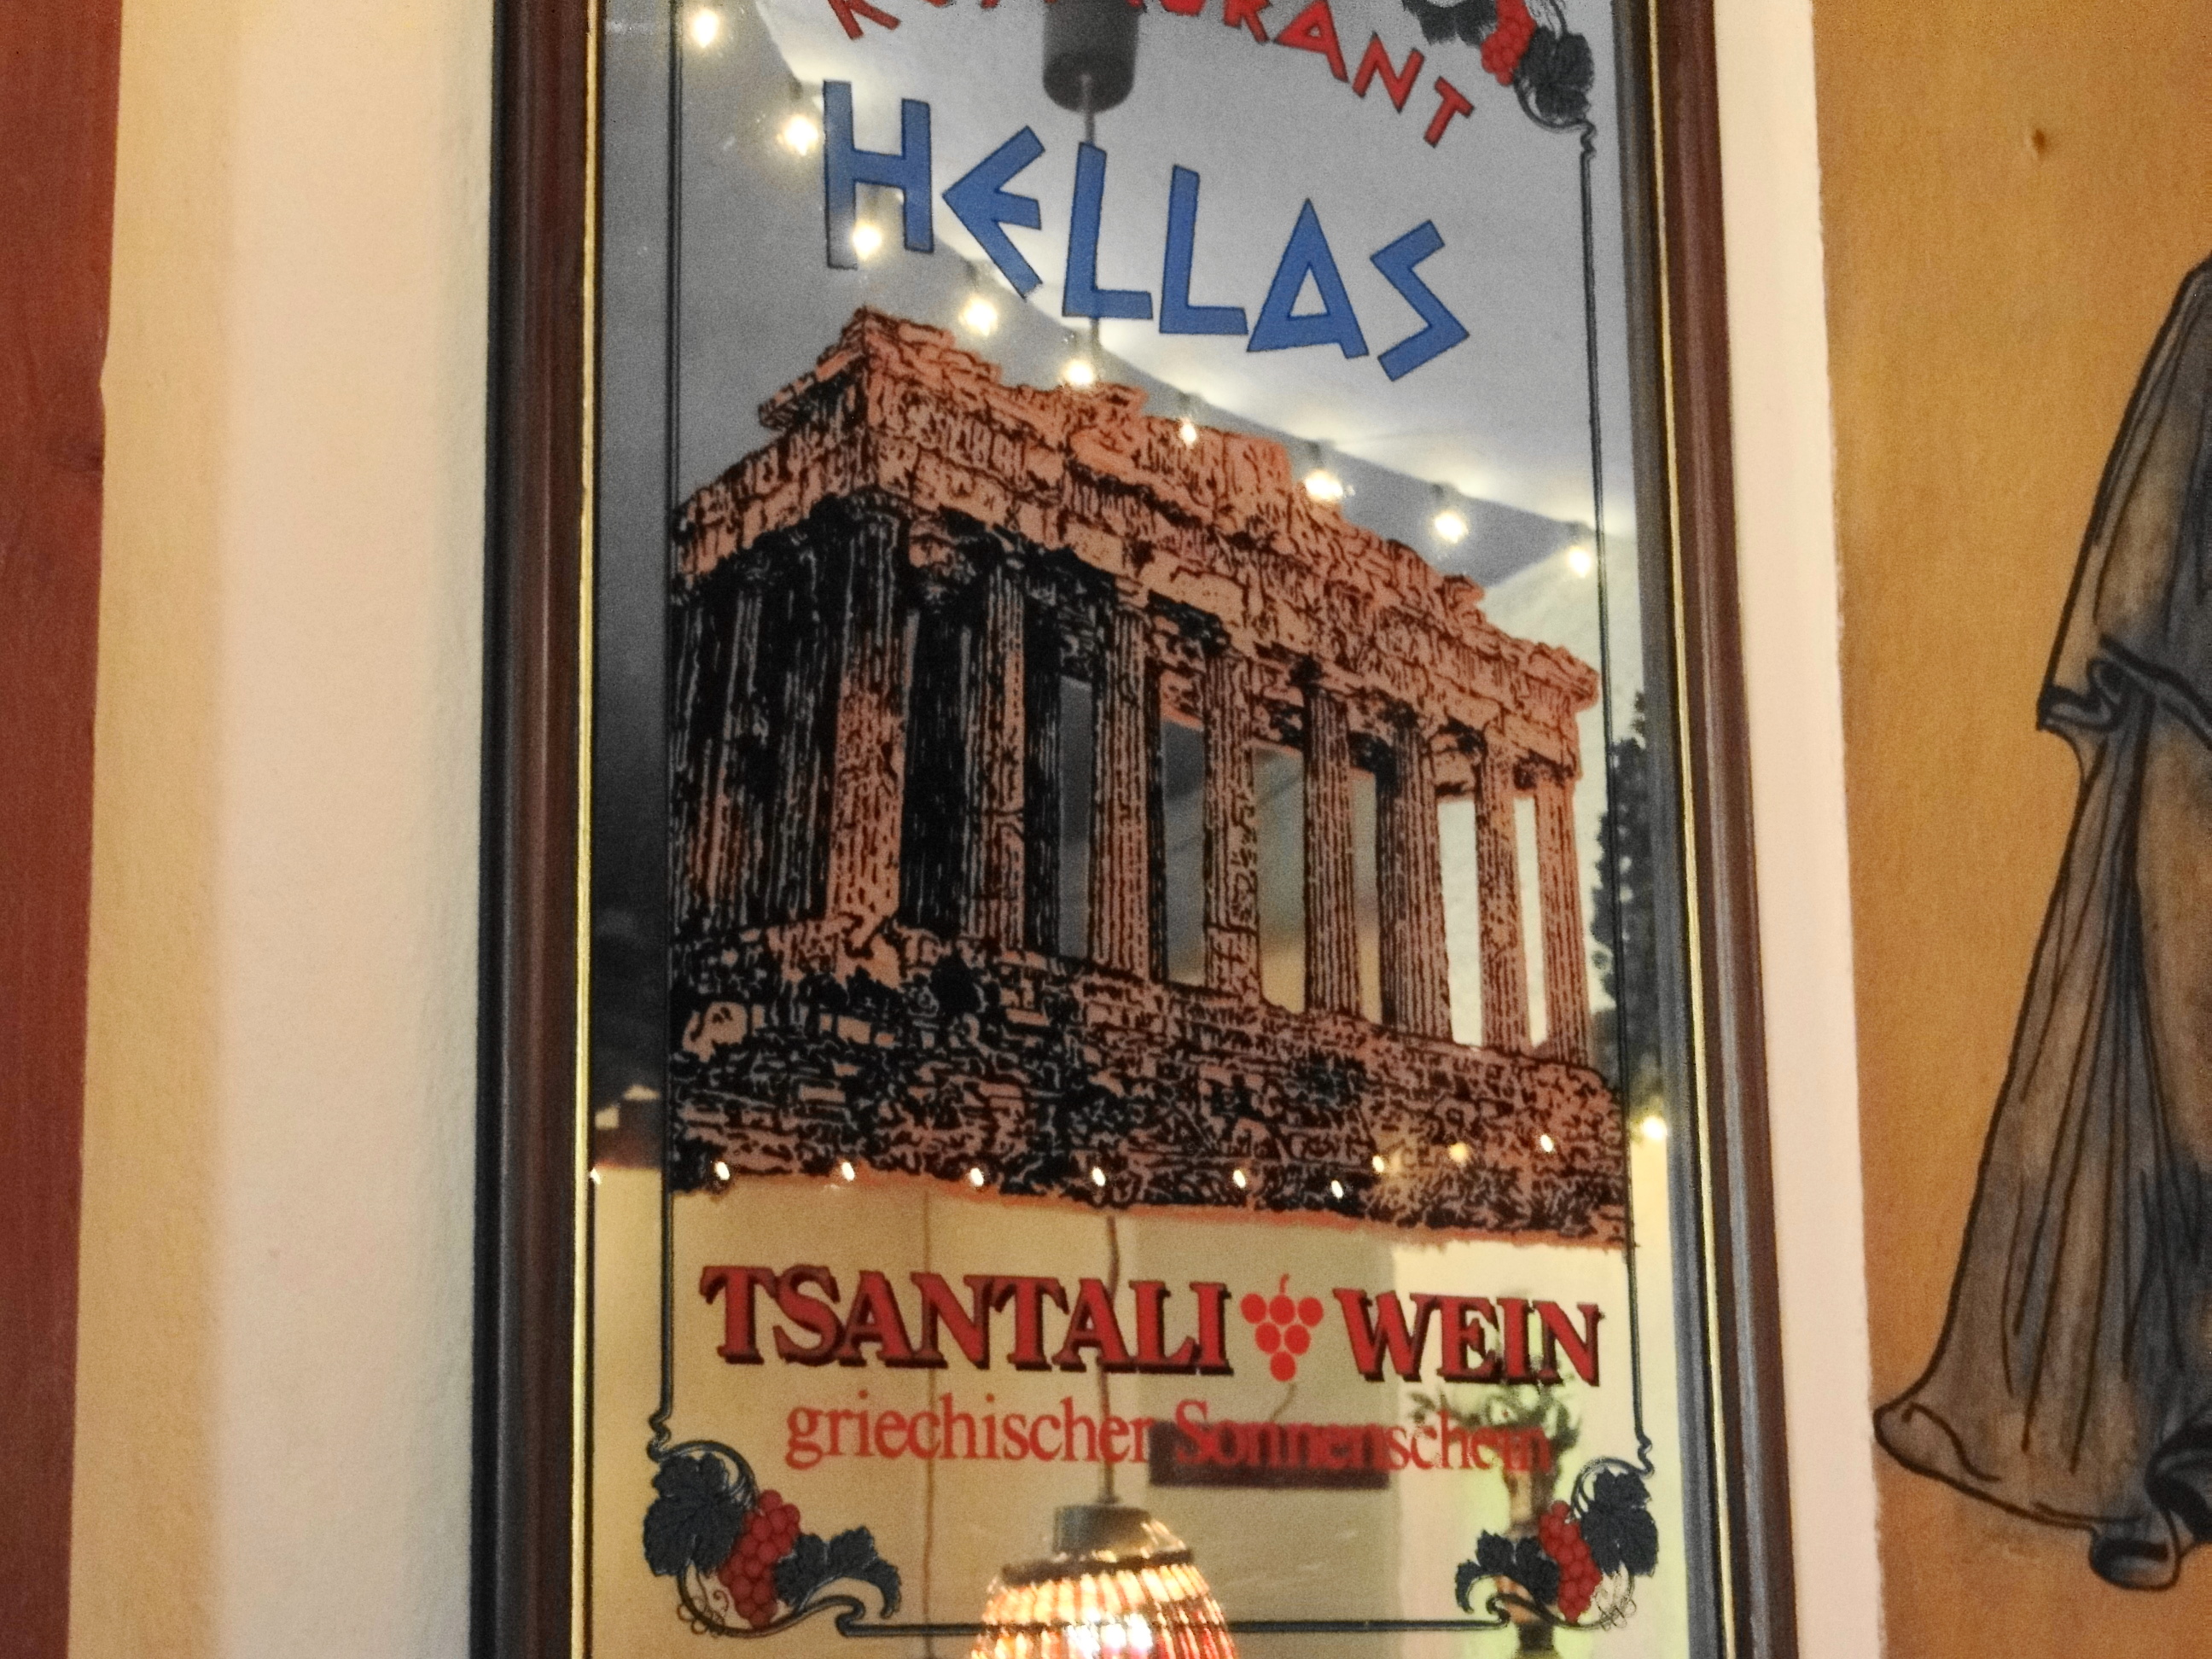 Griechisches Restaurant HELLAS in Kurzen-Geismar-Str. 29, Spiegel an der Wand